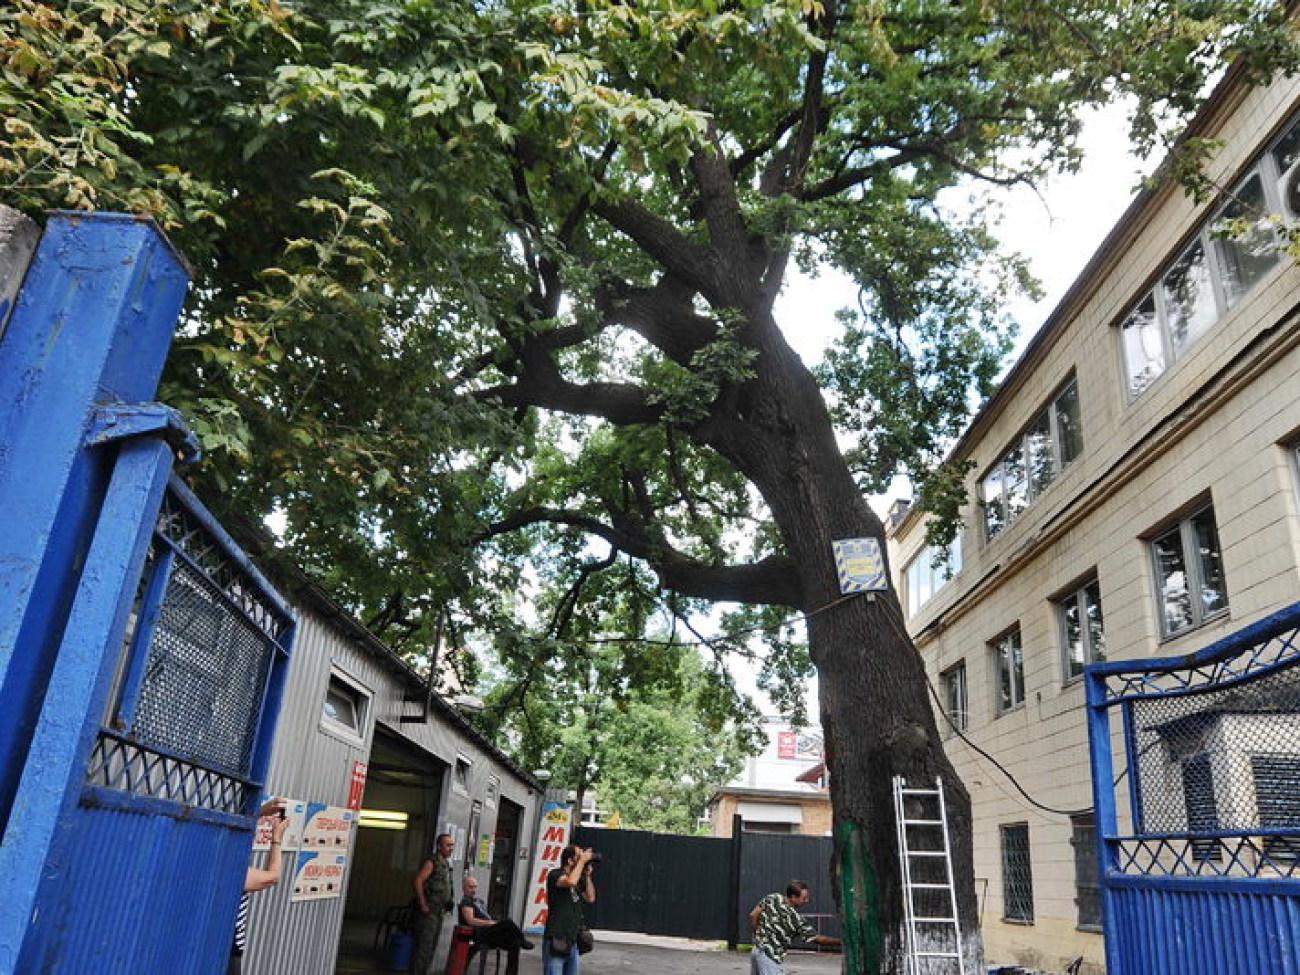 В Киеве пролечили 300-летний Шулявский дуб, 22 августа 2013г.